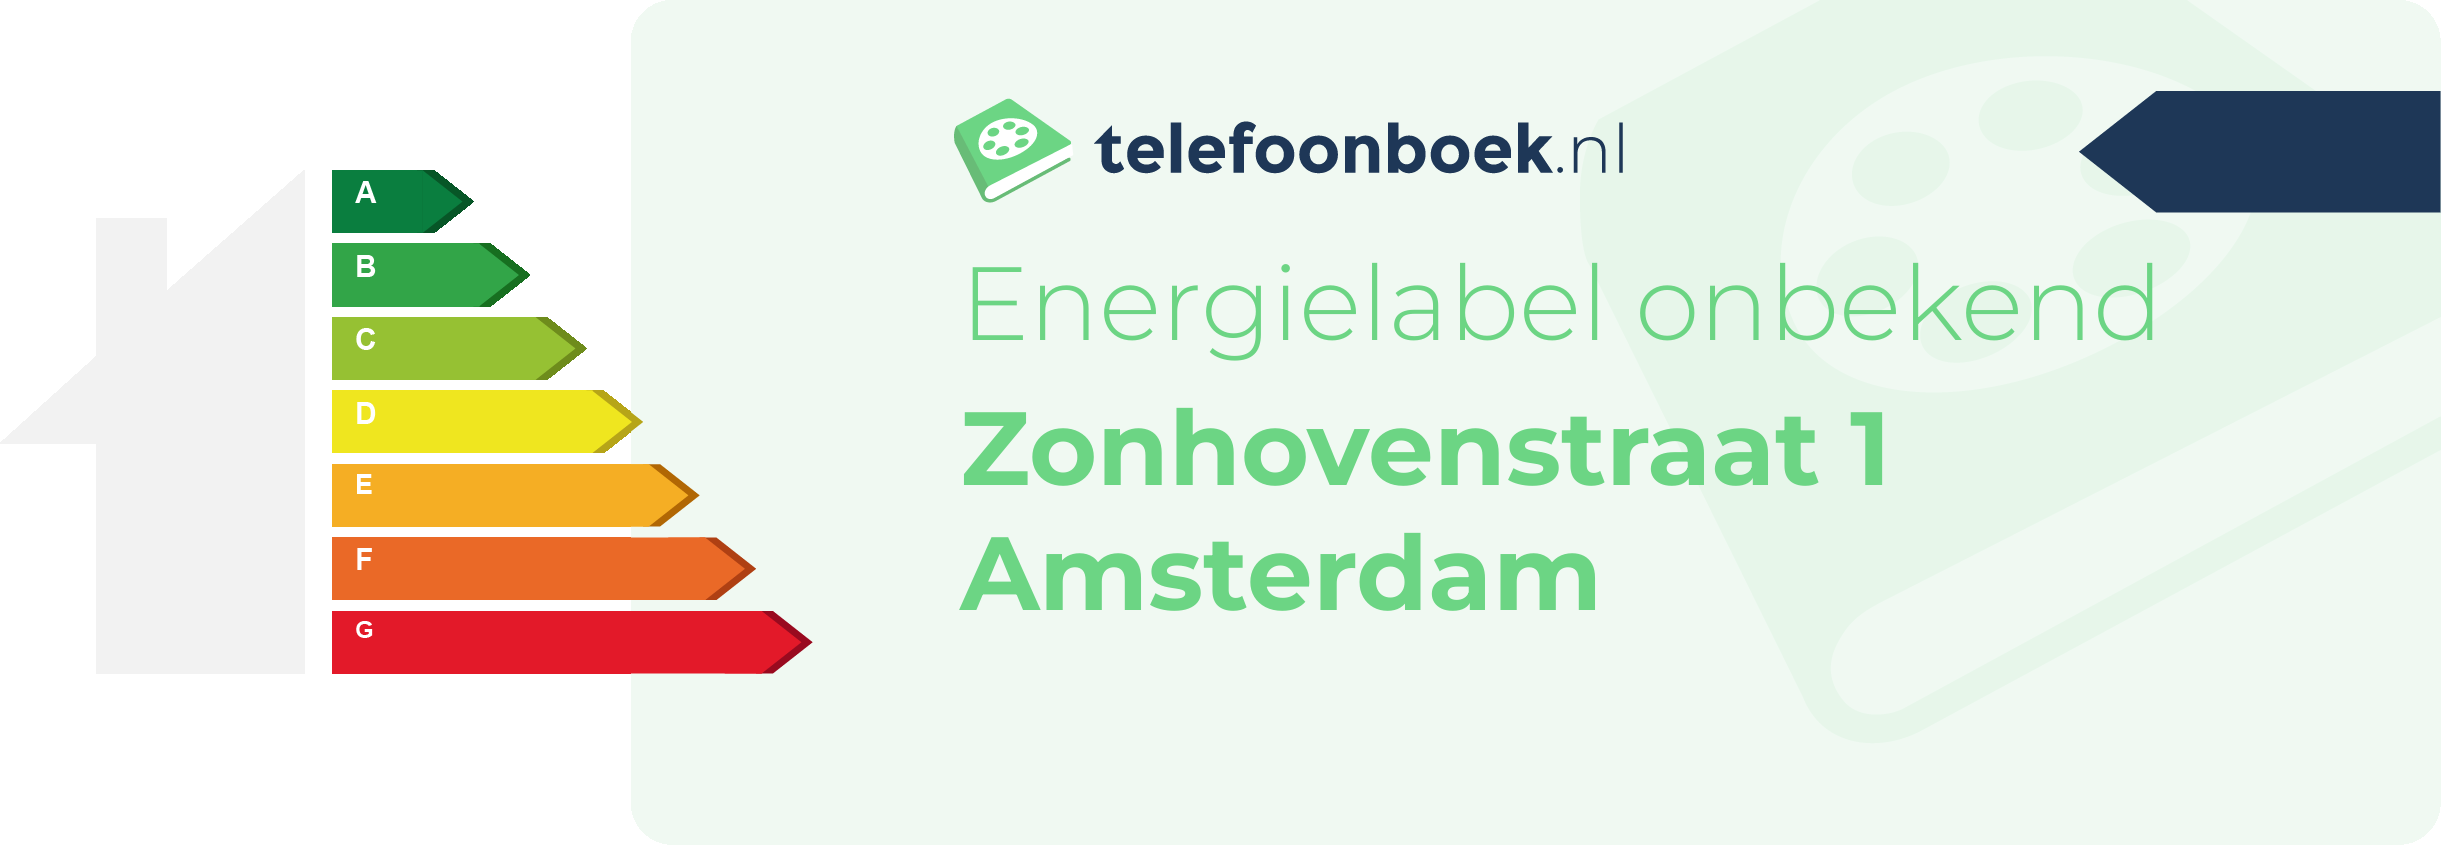 Energielabel Zonhovenstraat 1 Amsterdam